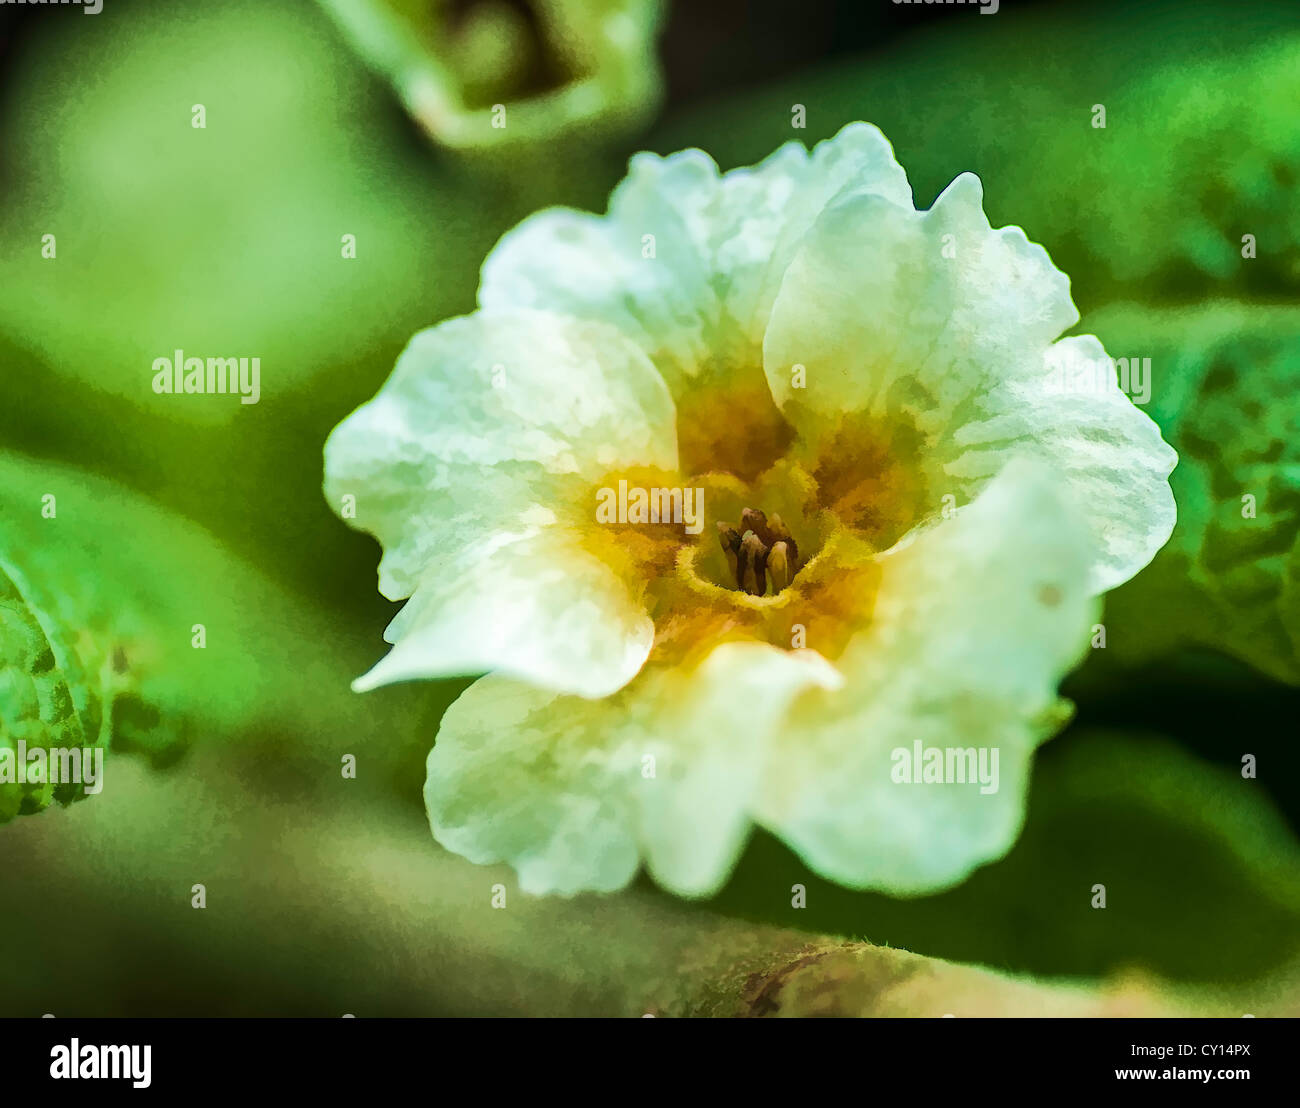 Peinture effet appliqué sur une photo de la fleur de jardin Blanc sur vert maison de repos sur ses pétales Banque D'Images